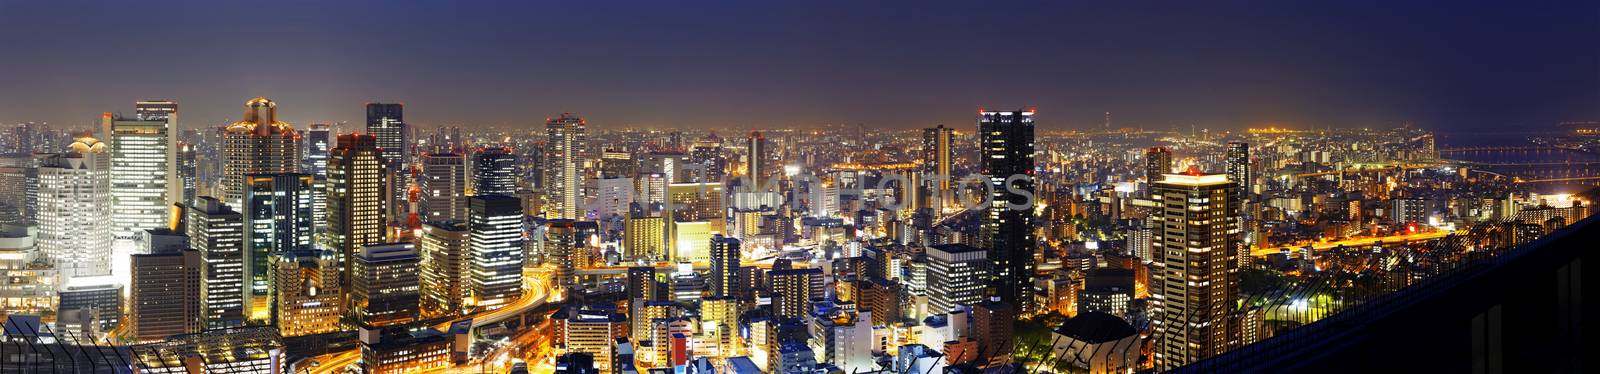 Osaka night by cozyta